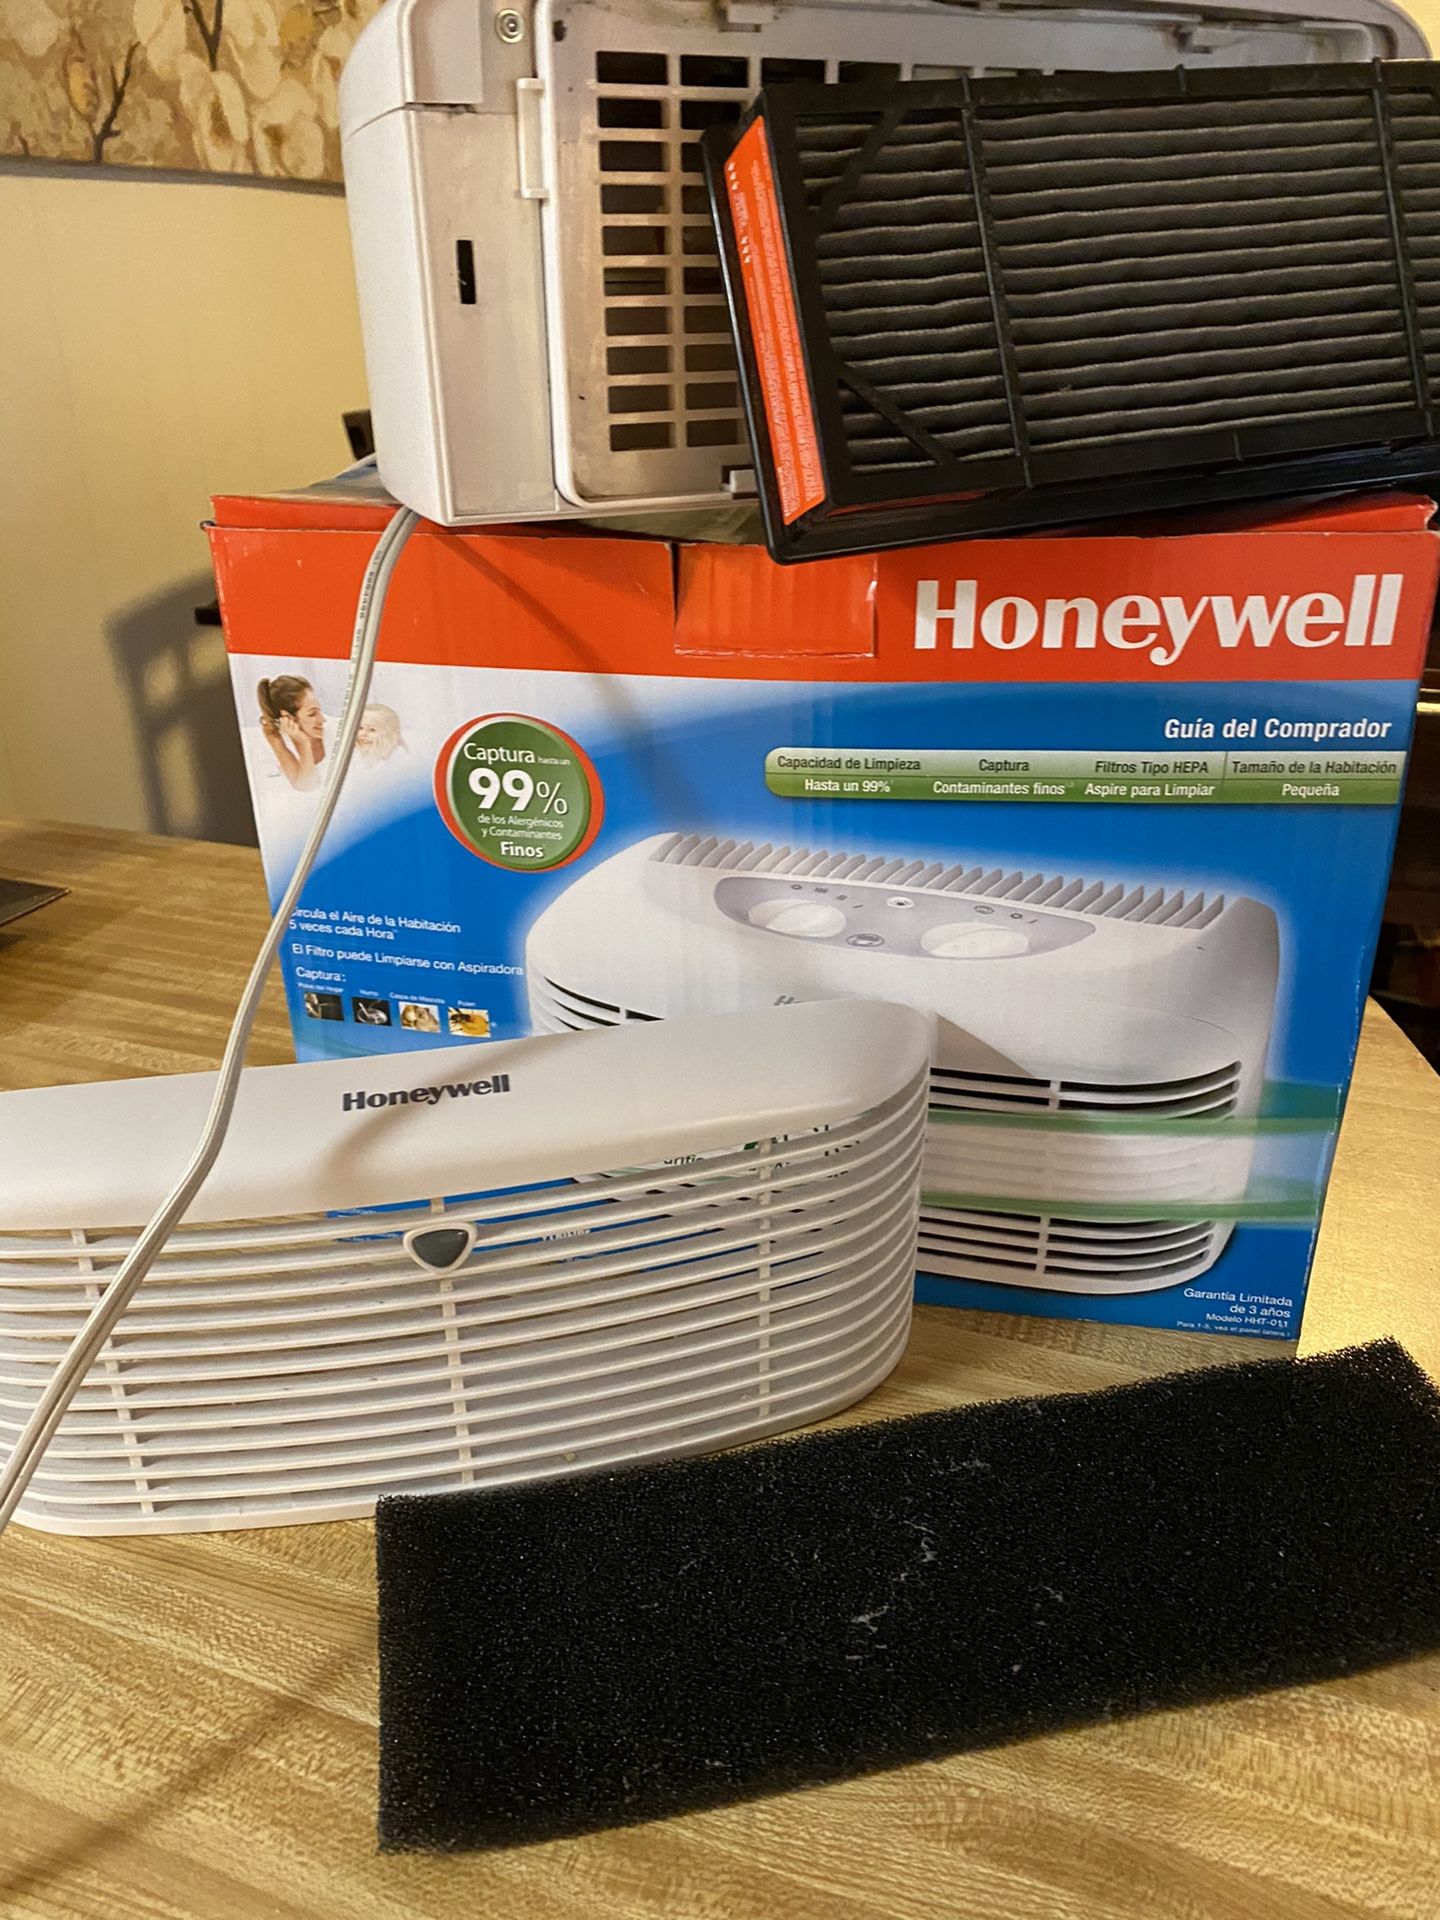 Honeywell Desk Top Air Purifier